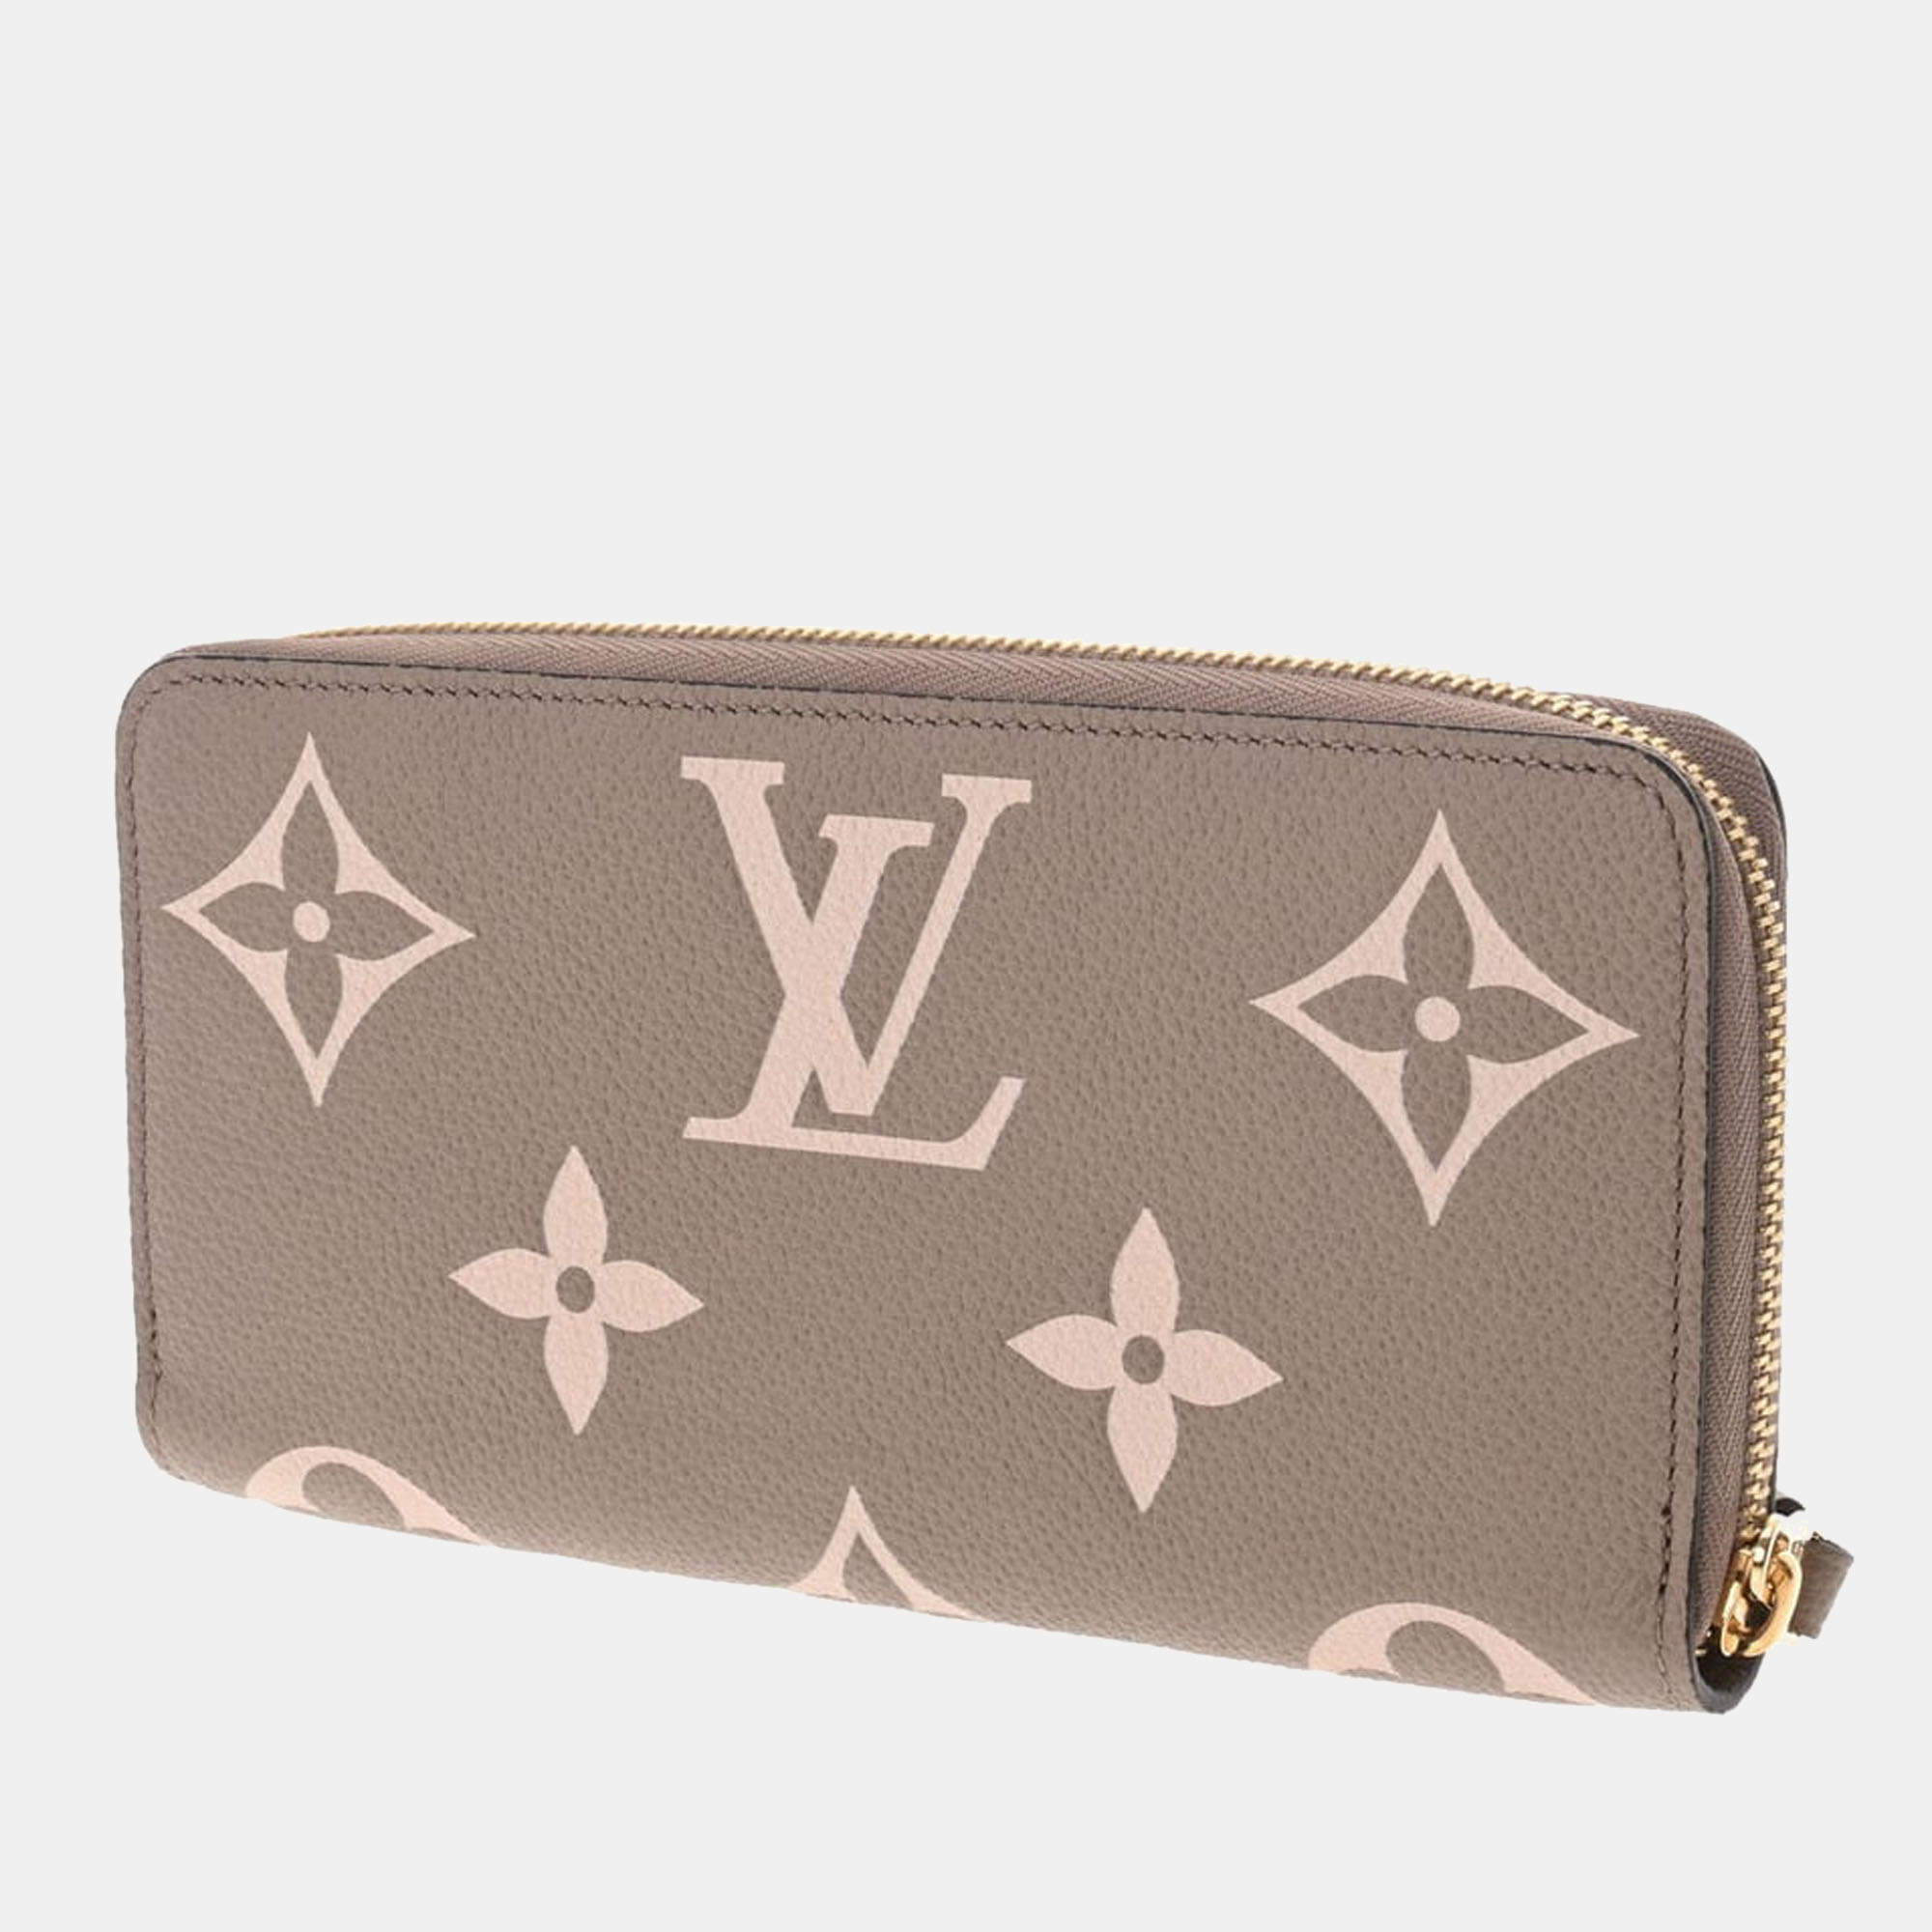 Louis Vuitton - Zippy Coin Purse - Monogram Canvas - Beige - Women - Luxury